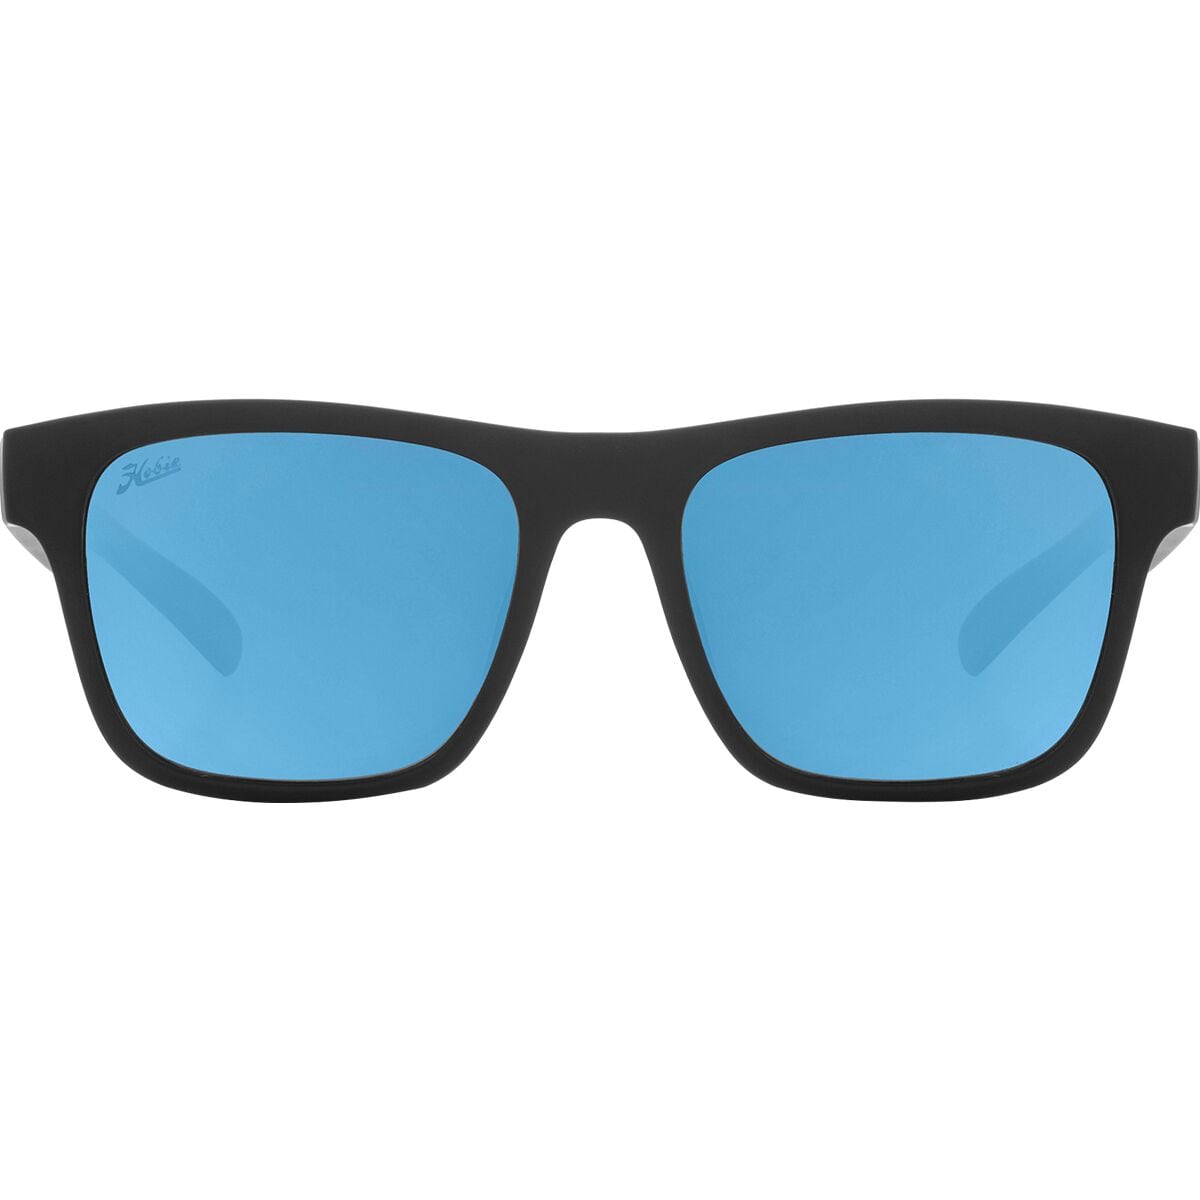 Hobie Coastal Float Polarized Sunglasses Satin Black/Grey, One